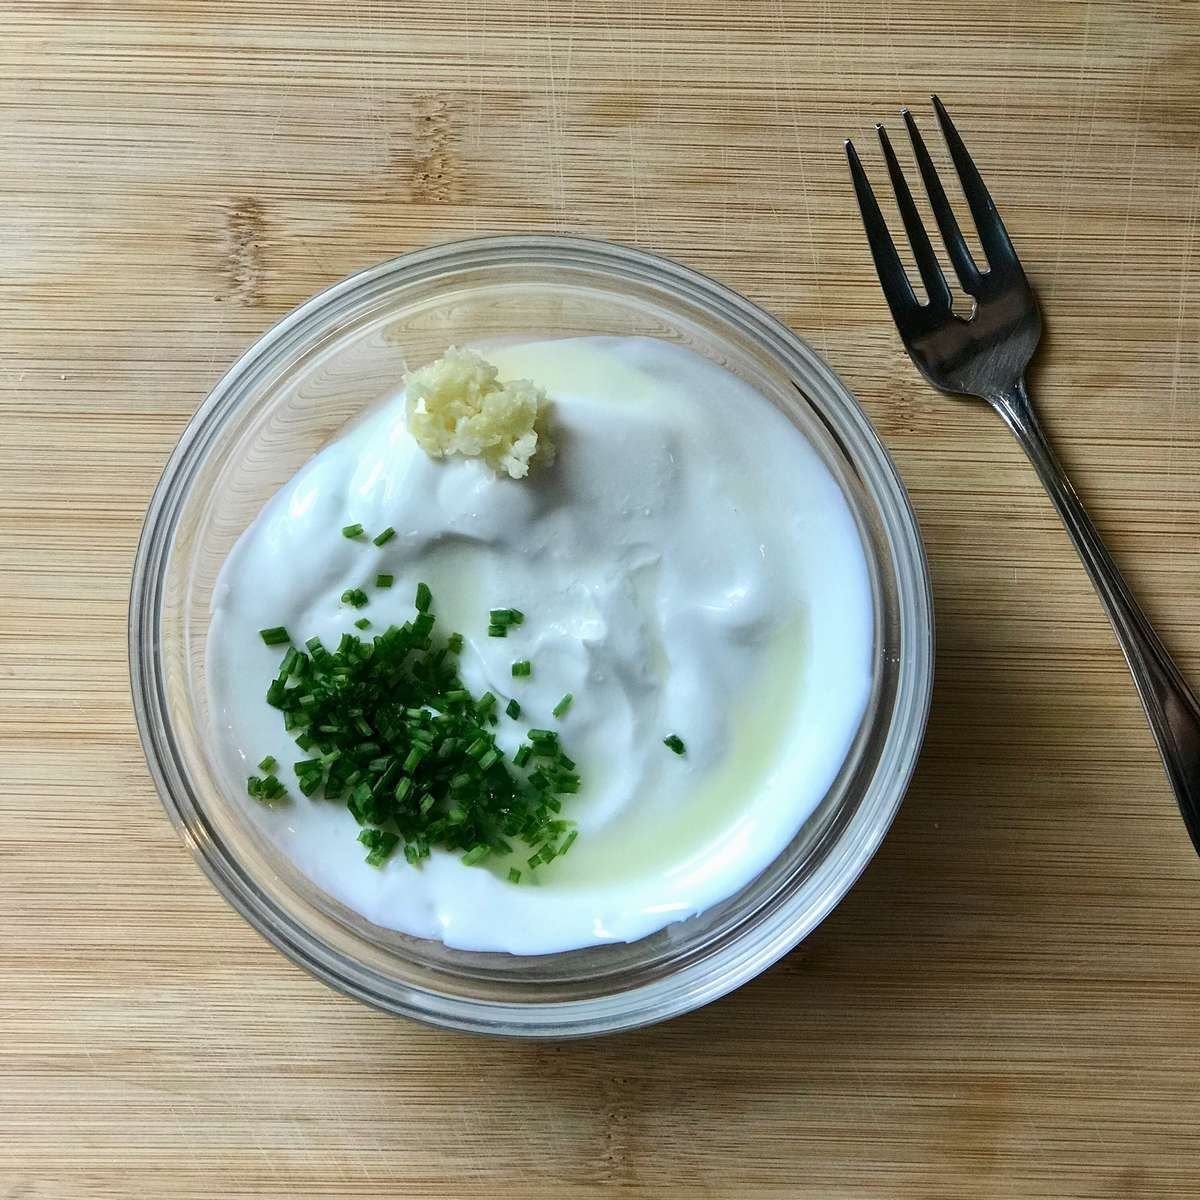 Ingredients to make garlic yogurt sauce in a bowl.